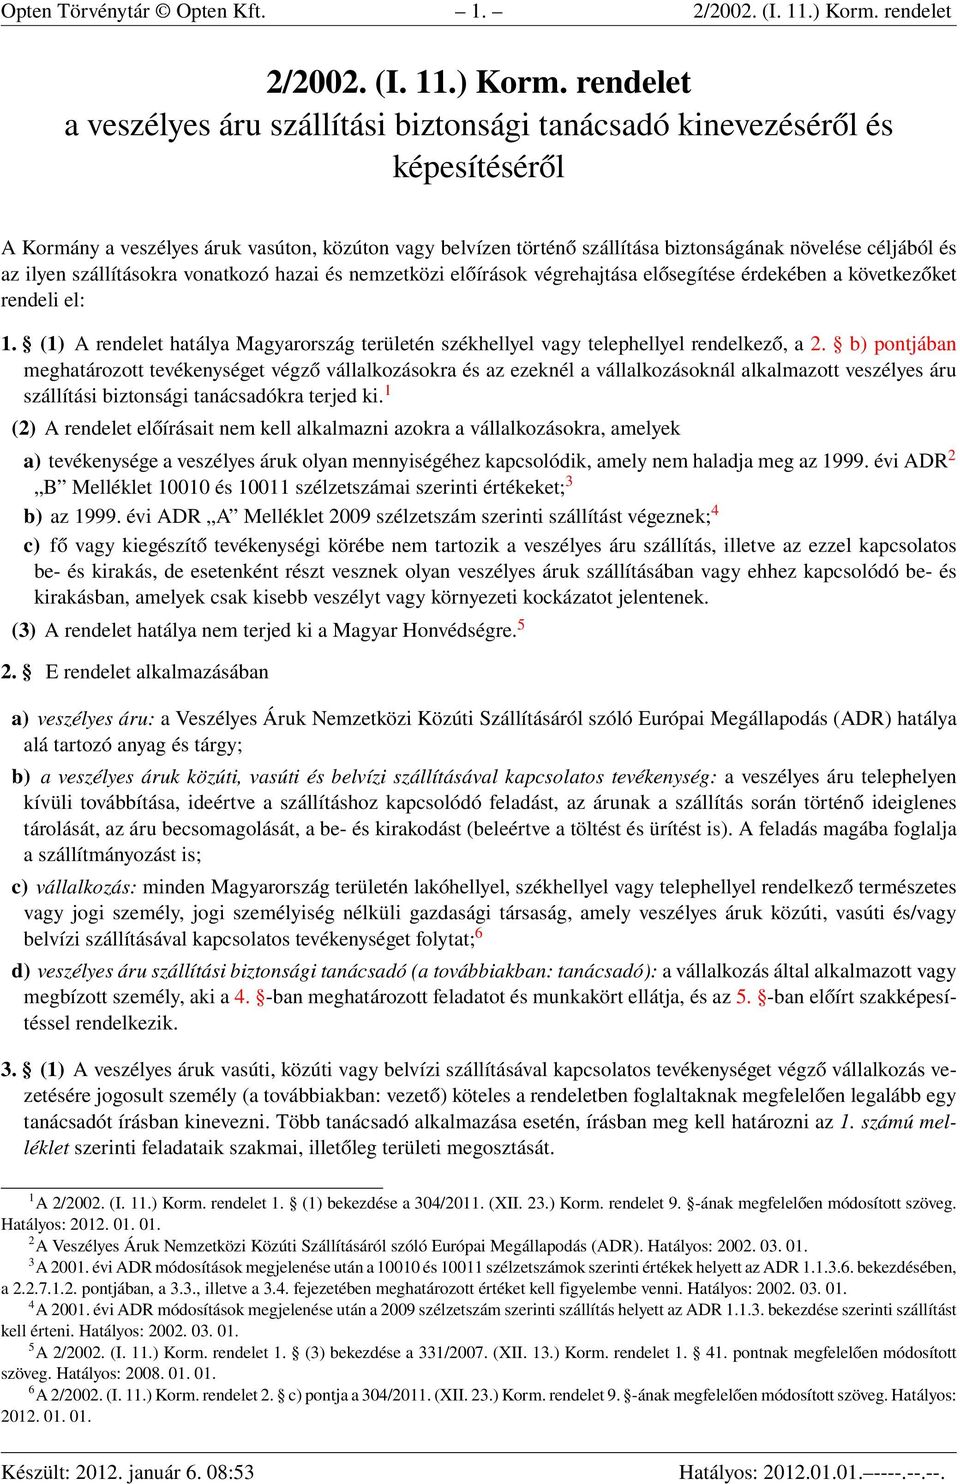 2/2002. (I. 11.) Korm. rendelet a veszélyes áru szállítási biztonsági  tanácsadó kinevezéséről és képesítéséről - PDF Free Download